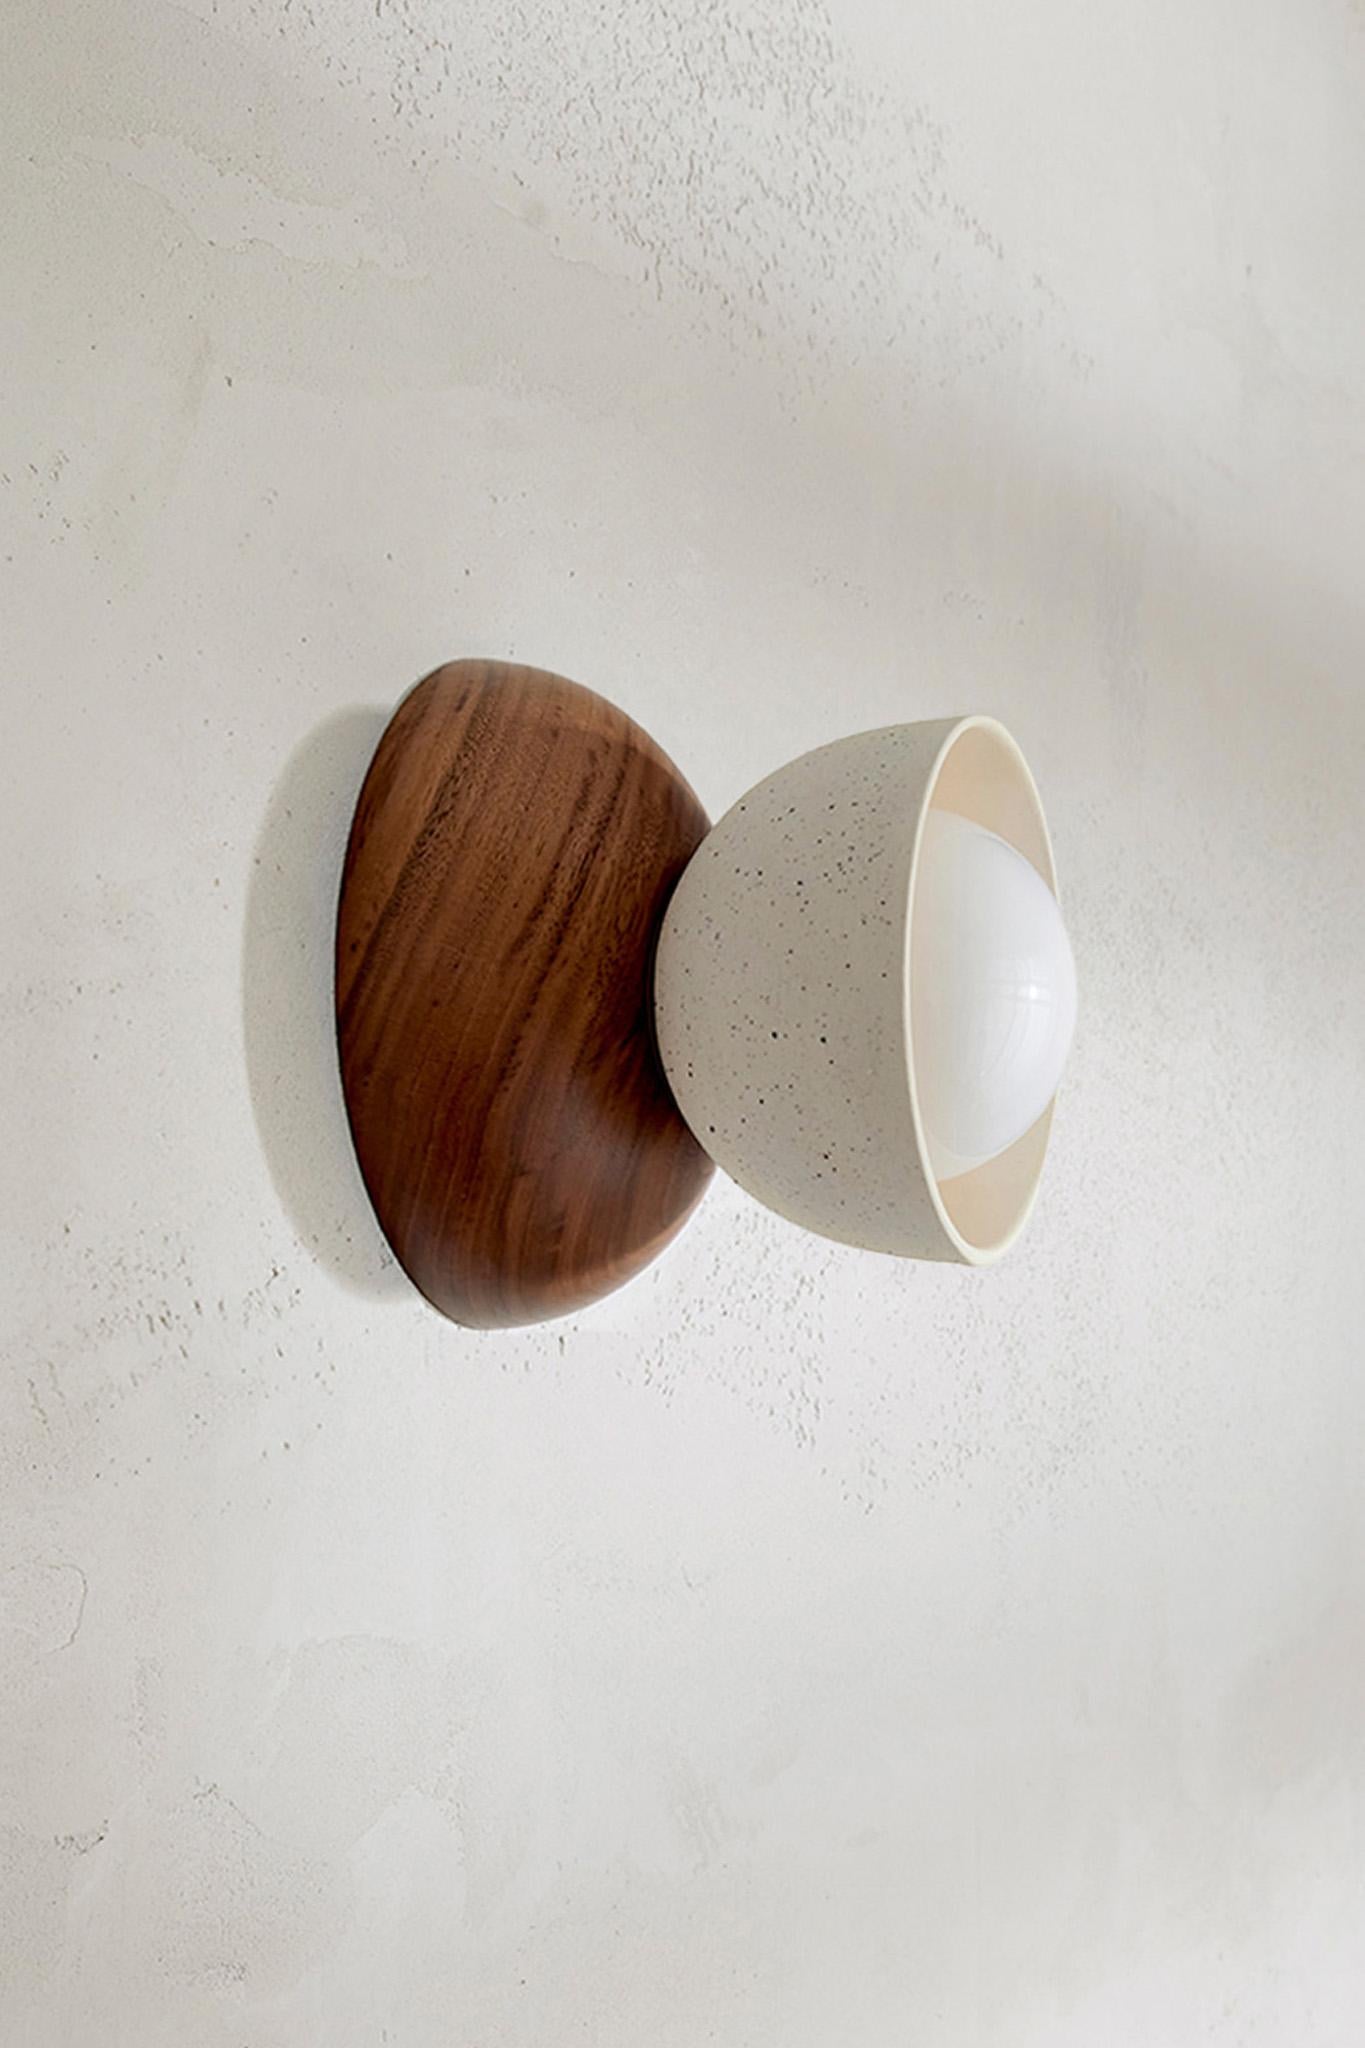 Die Terra 00 Surface Sconce besteht aus einer Kombination von zwei kontrastierenden Halbkuppeln, einem Schirm aus gegossener Keramik und handgedrechselten FSC-zertifizierten Hölzern. So entsteht eine moderne Form, die zwei Elemente miteinander